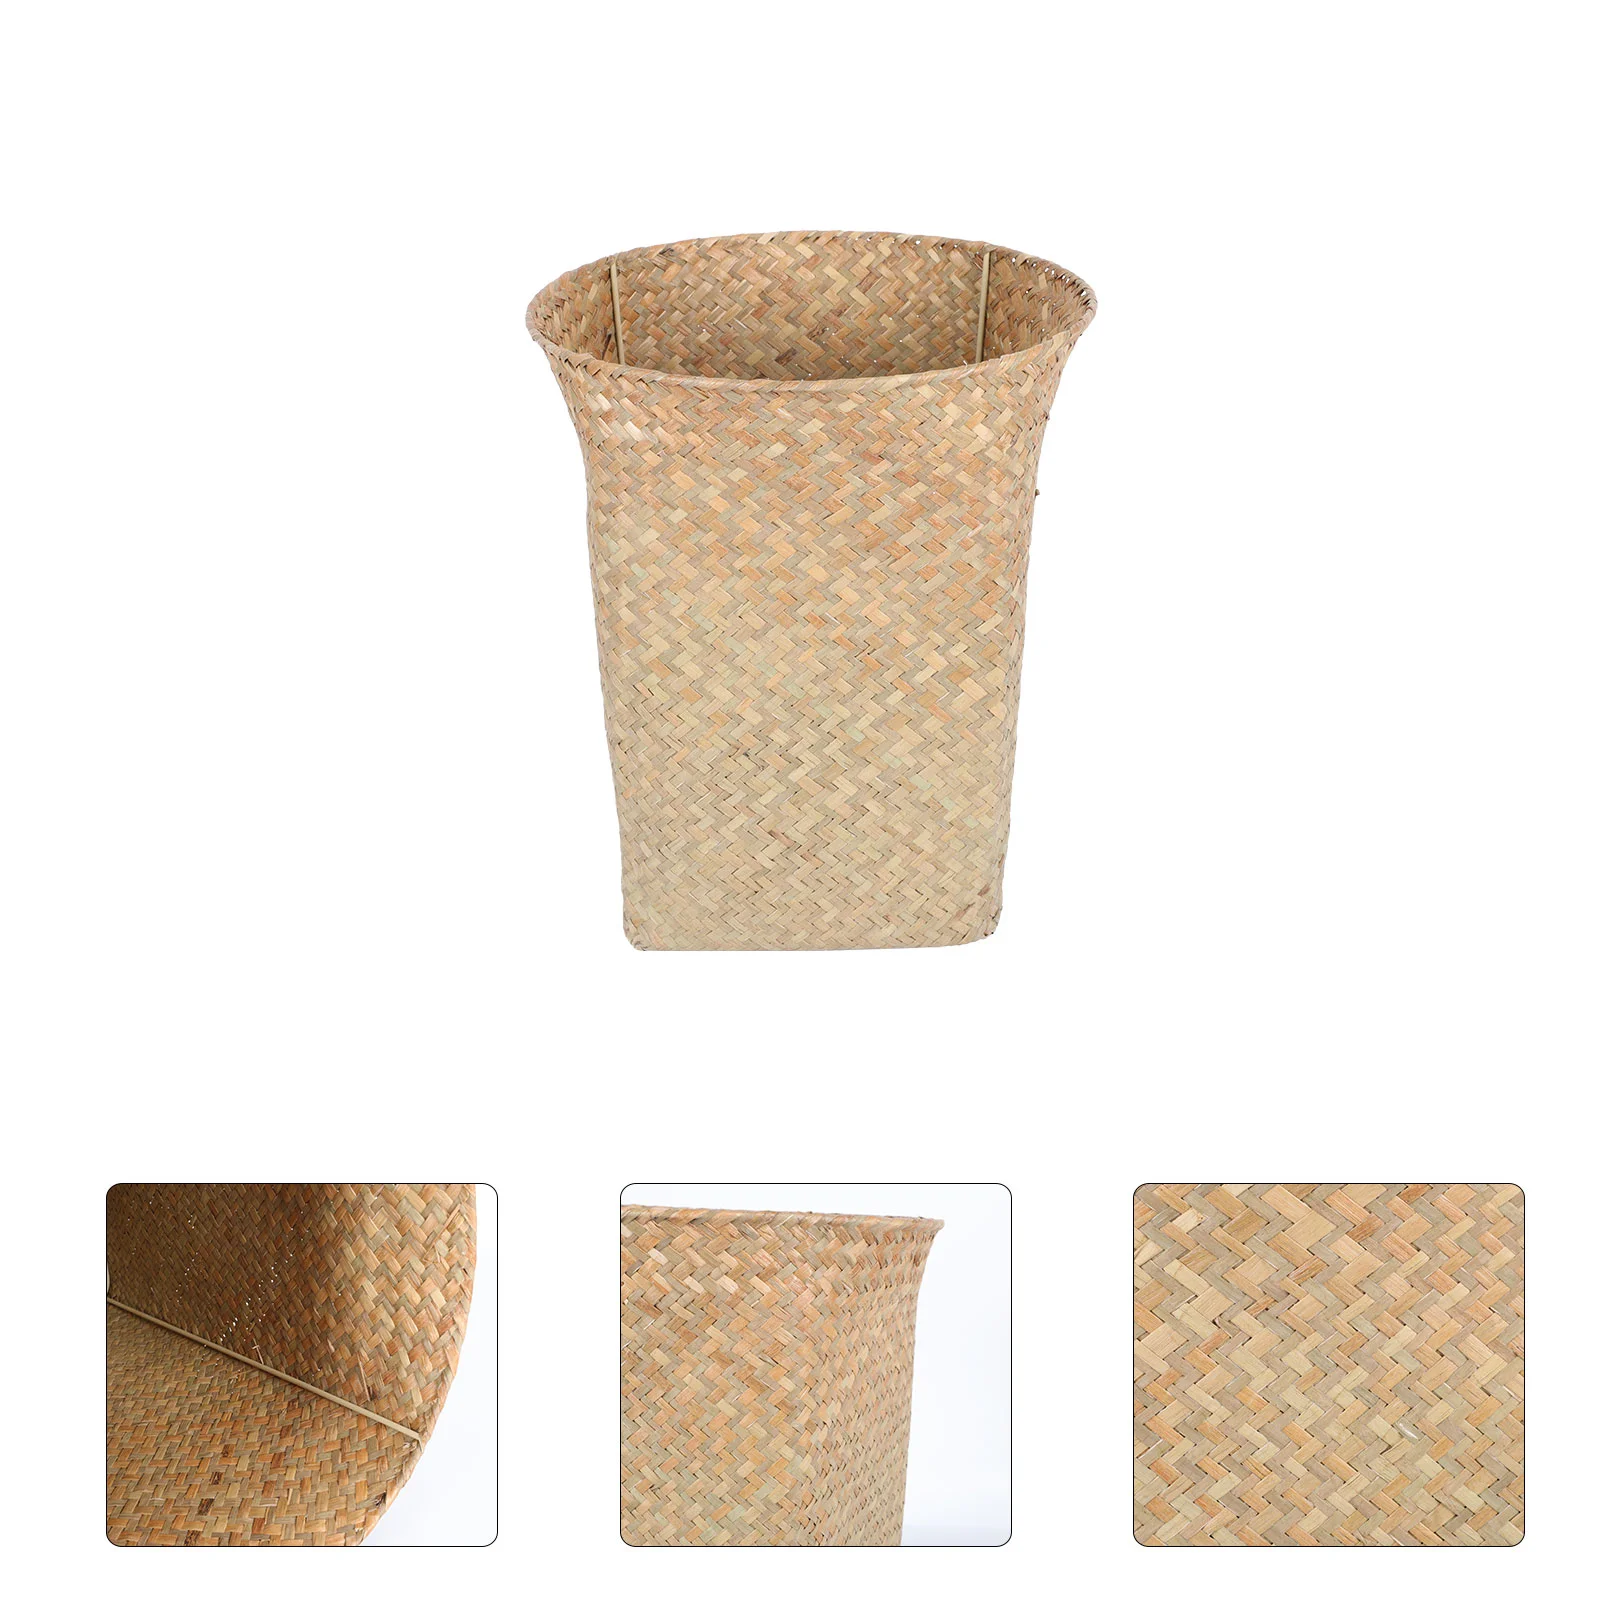 

Basket Can Trash Waste Woven Storage Bin Rattan Wicker Garbage Rubbish Seagrass Straw Wastebasket Container Baskets Paperlaundry